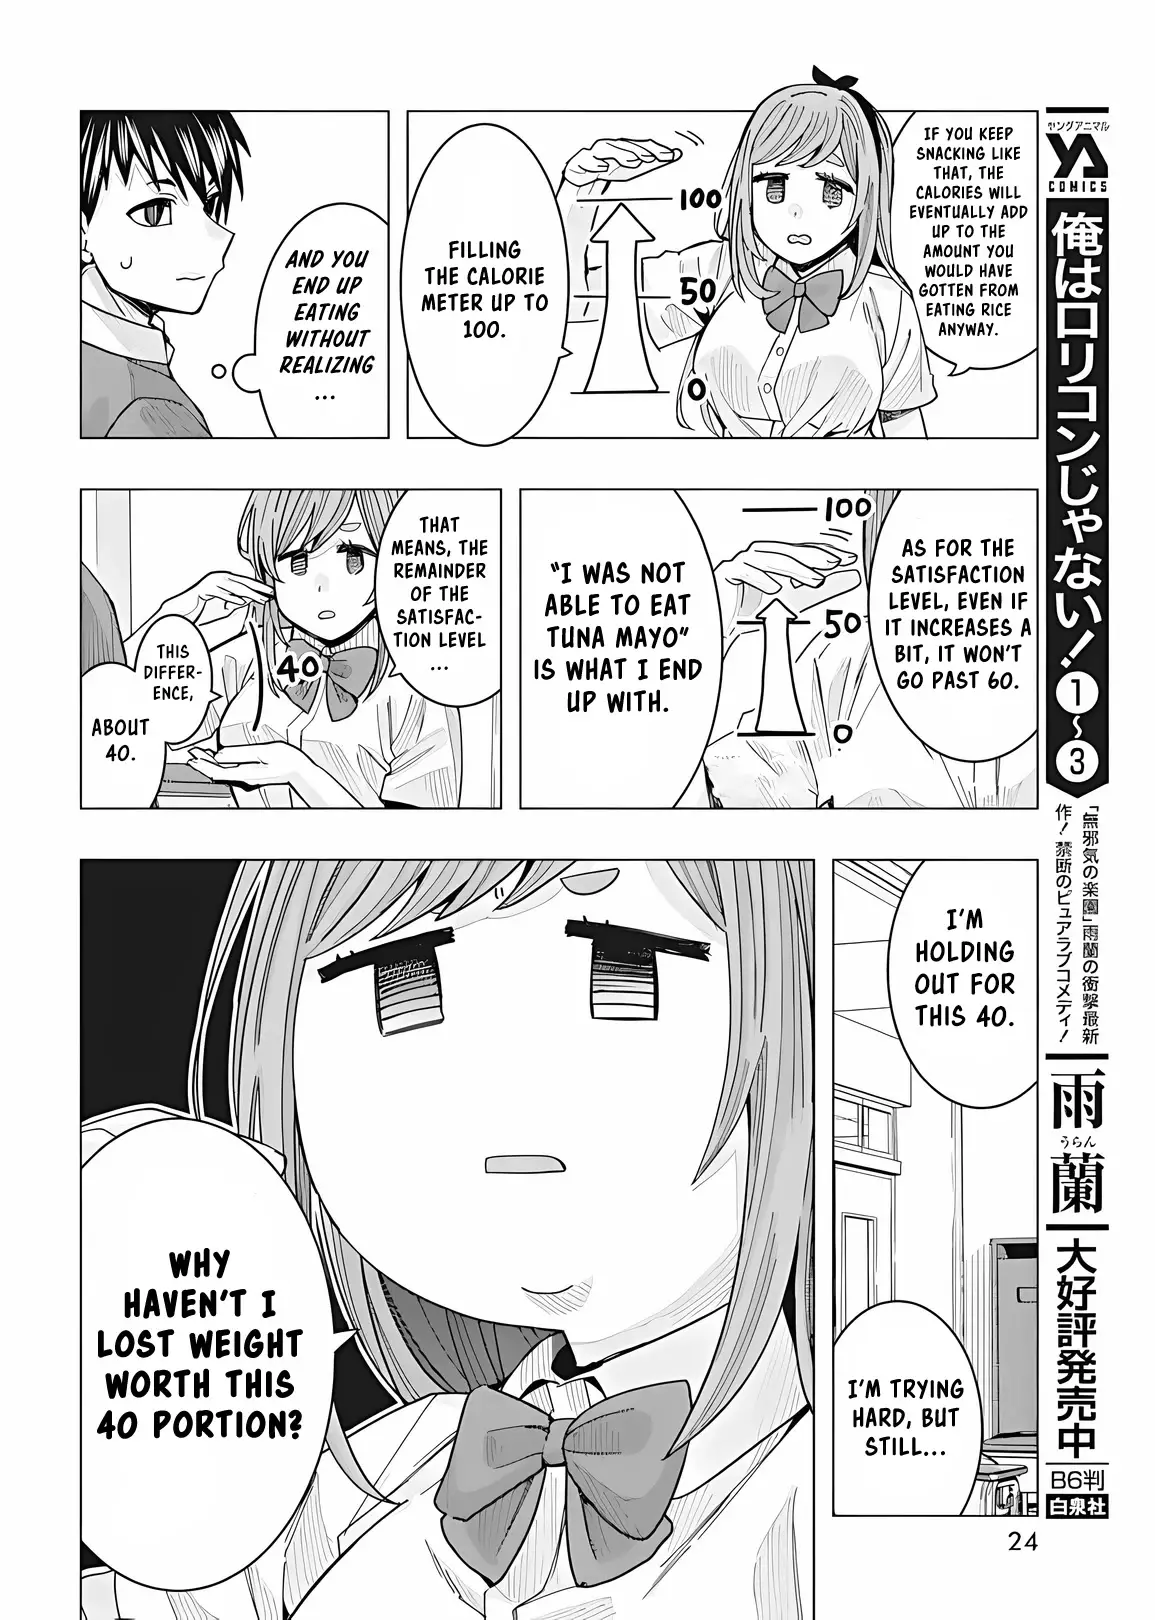 "nobukuni-San" Does She Like Me? - 23 page 14-0473a374